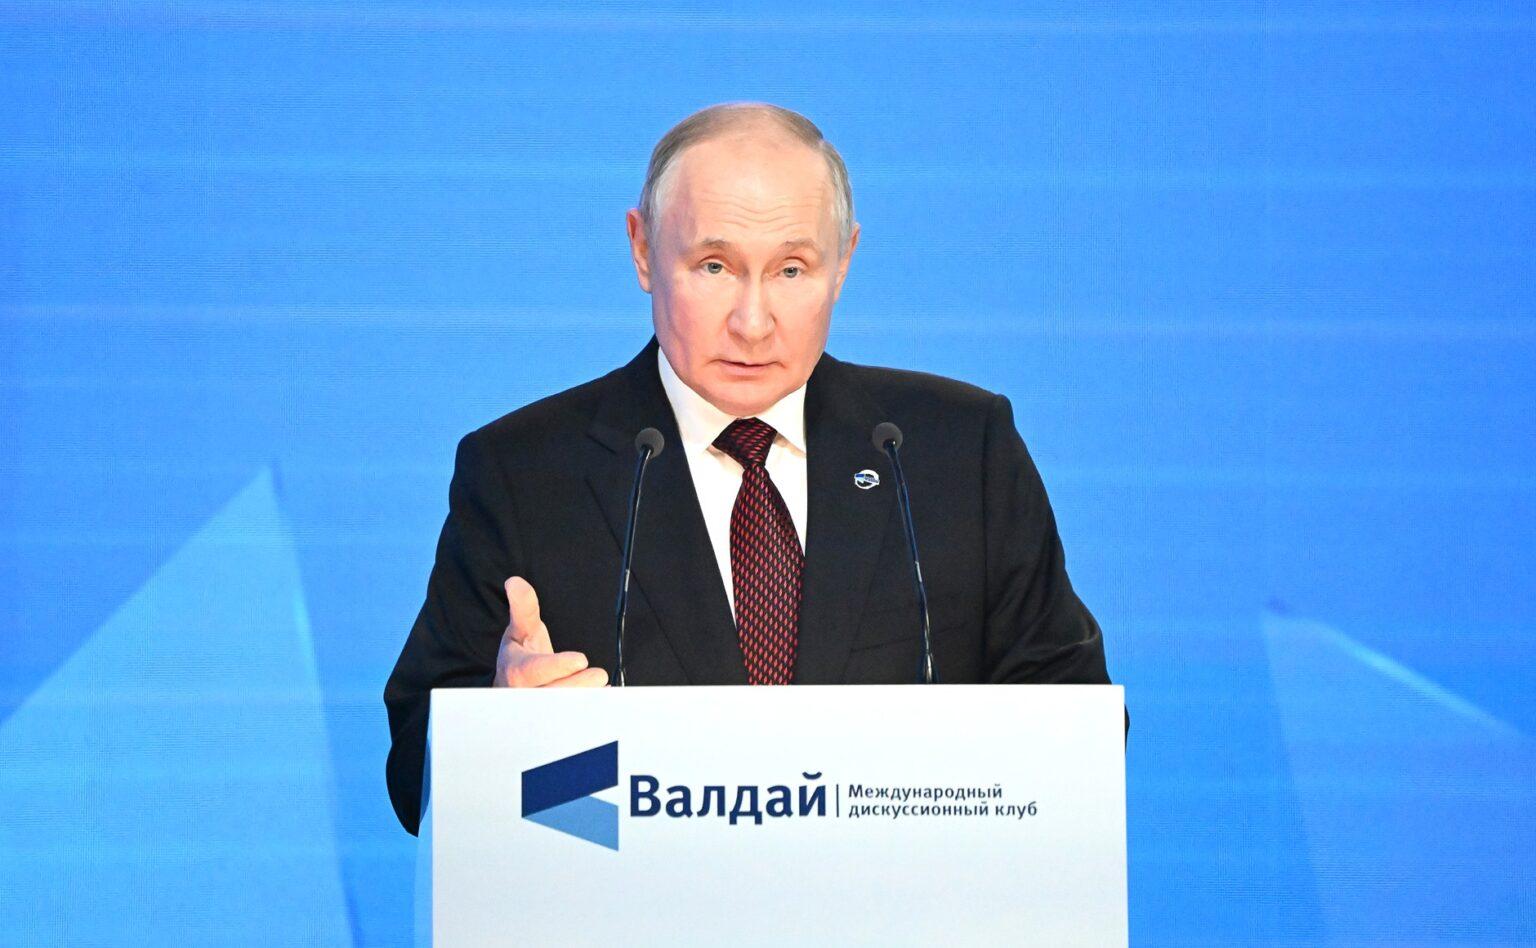 Путин лишил Запад мандата на грабеж мира